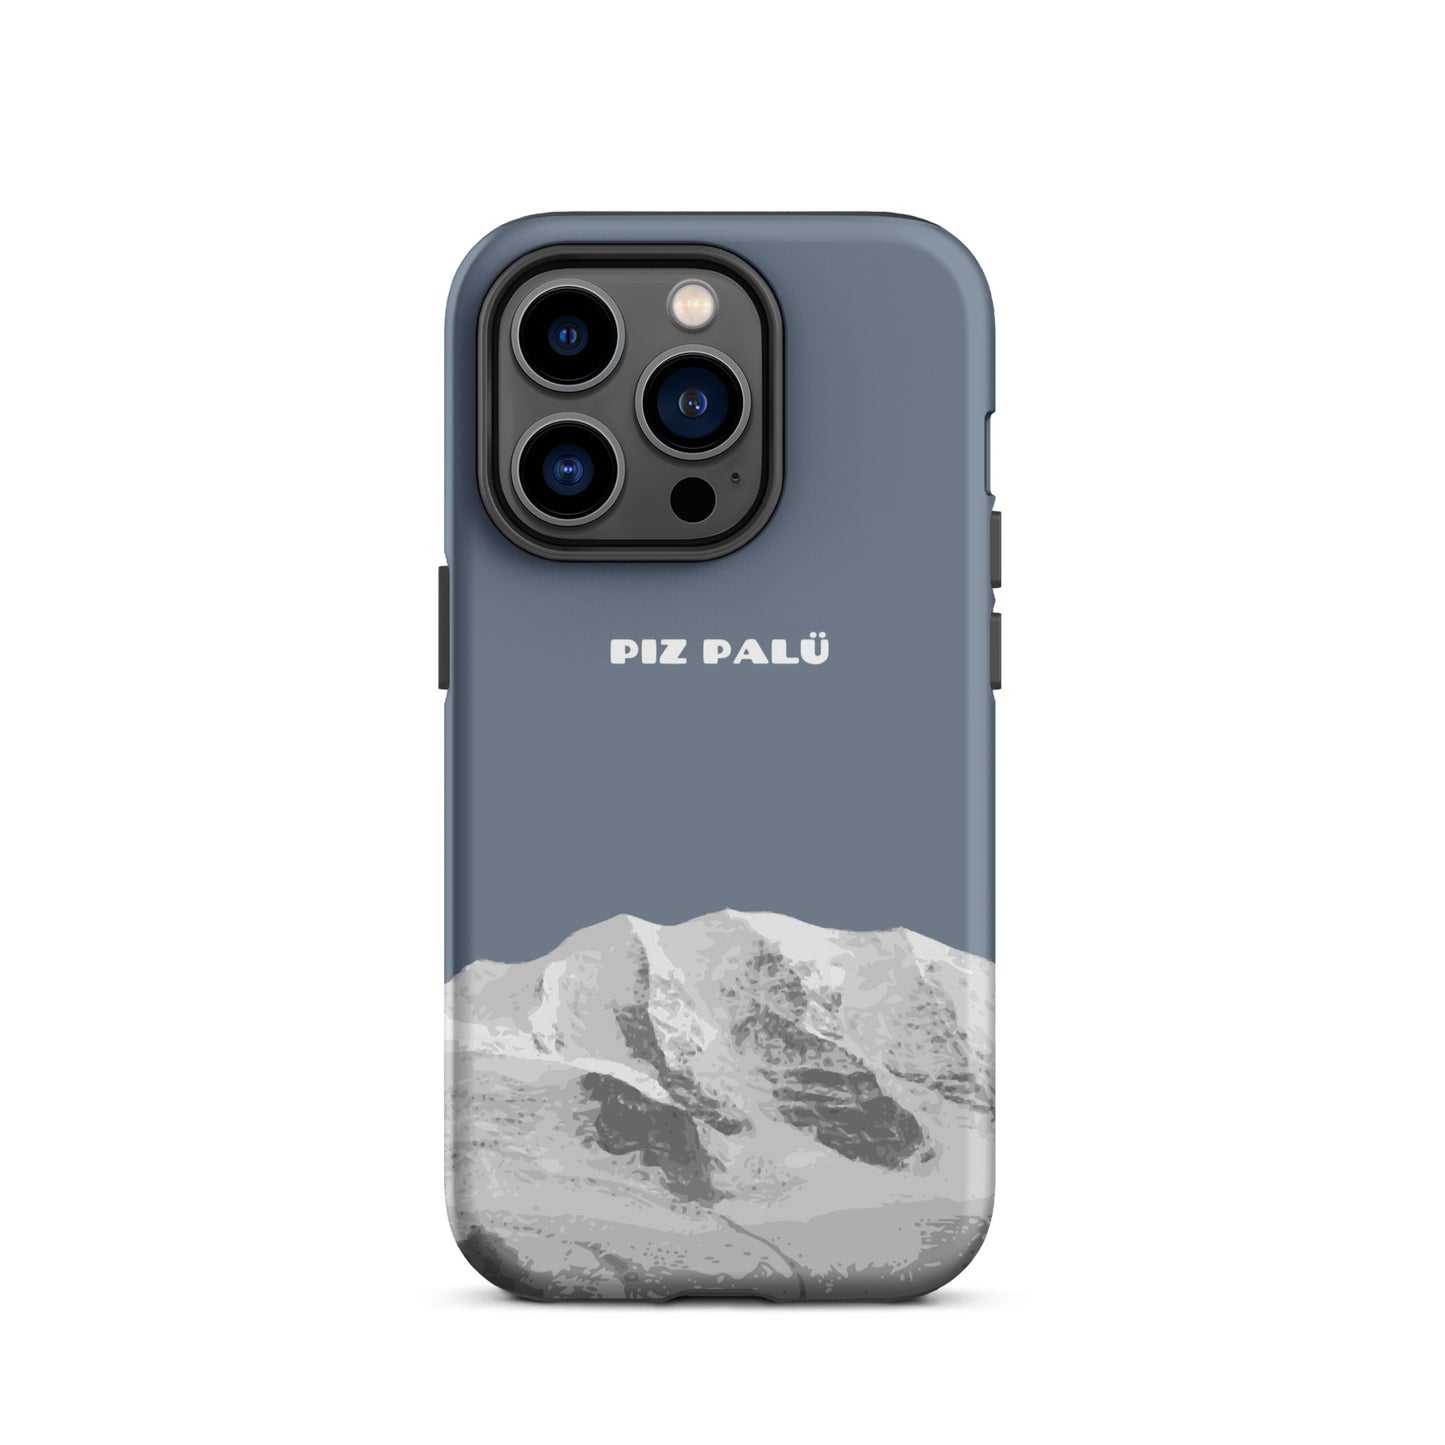 Hülle für das iPhone 14 Pro von Apple in der Farbe Schiefergrau, dass den Piz Palü in Graubünden zeigt.